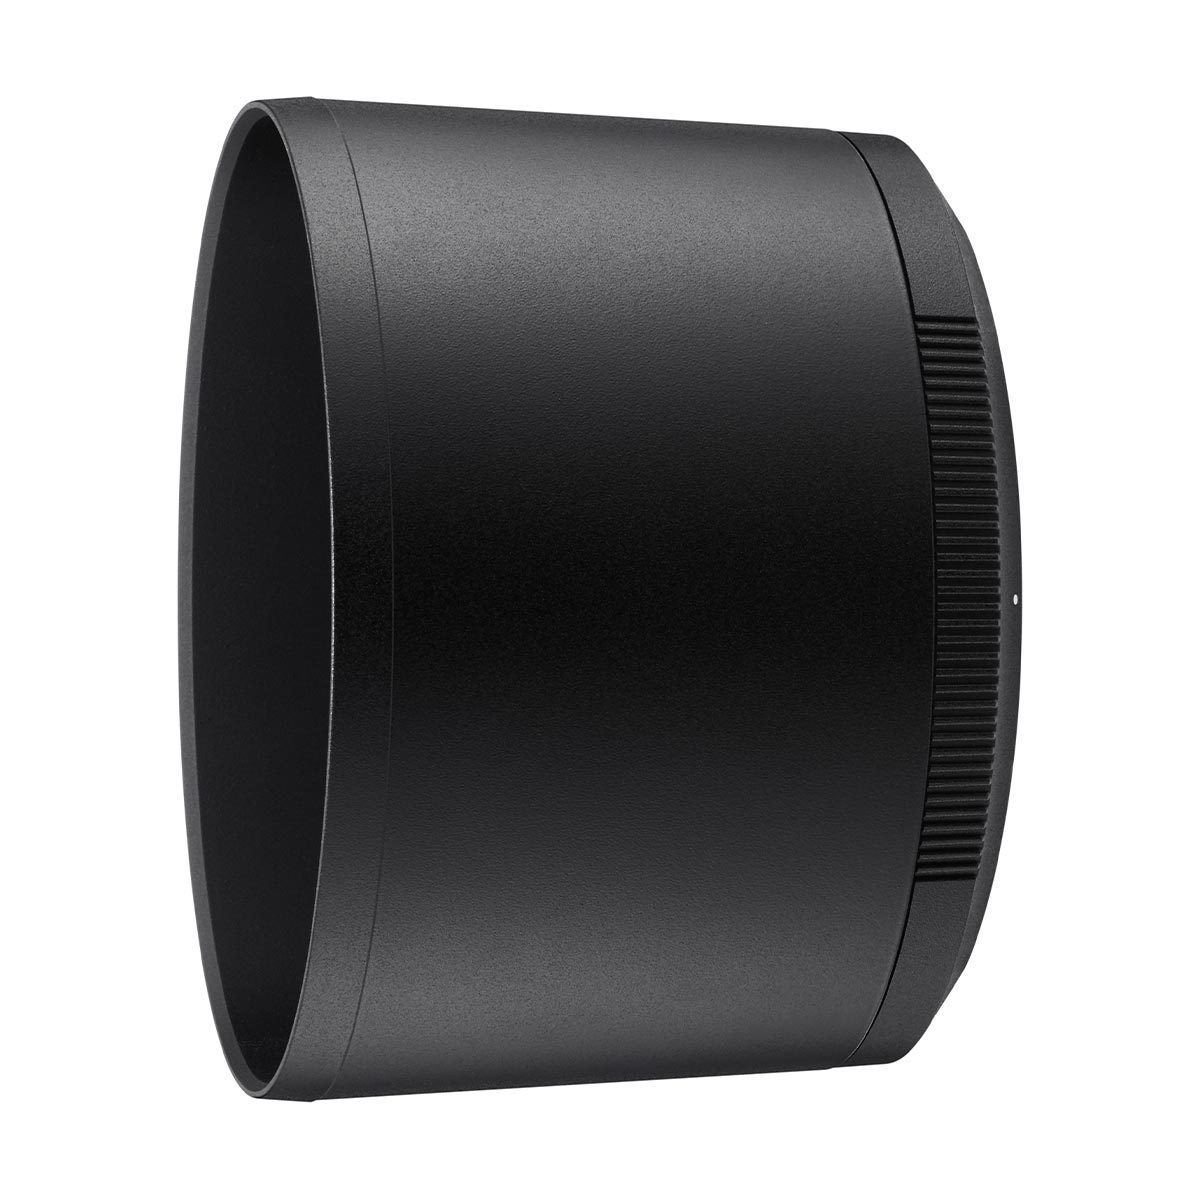 Nikon Z MC 105mm f/2.8 VR S Micro Lens